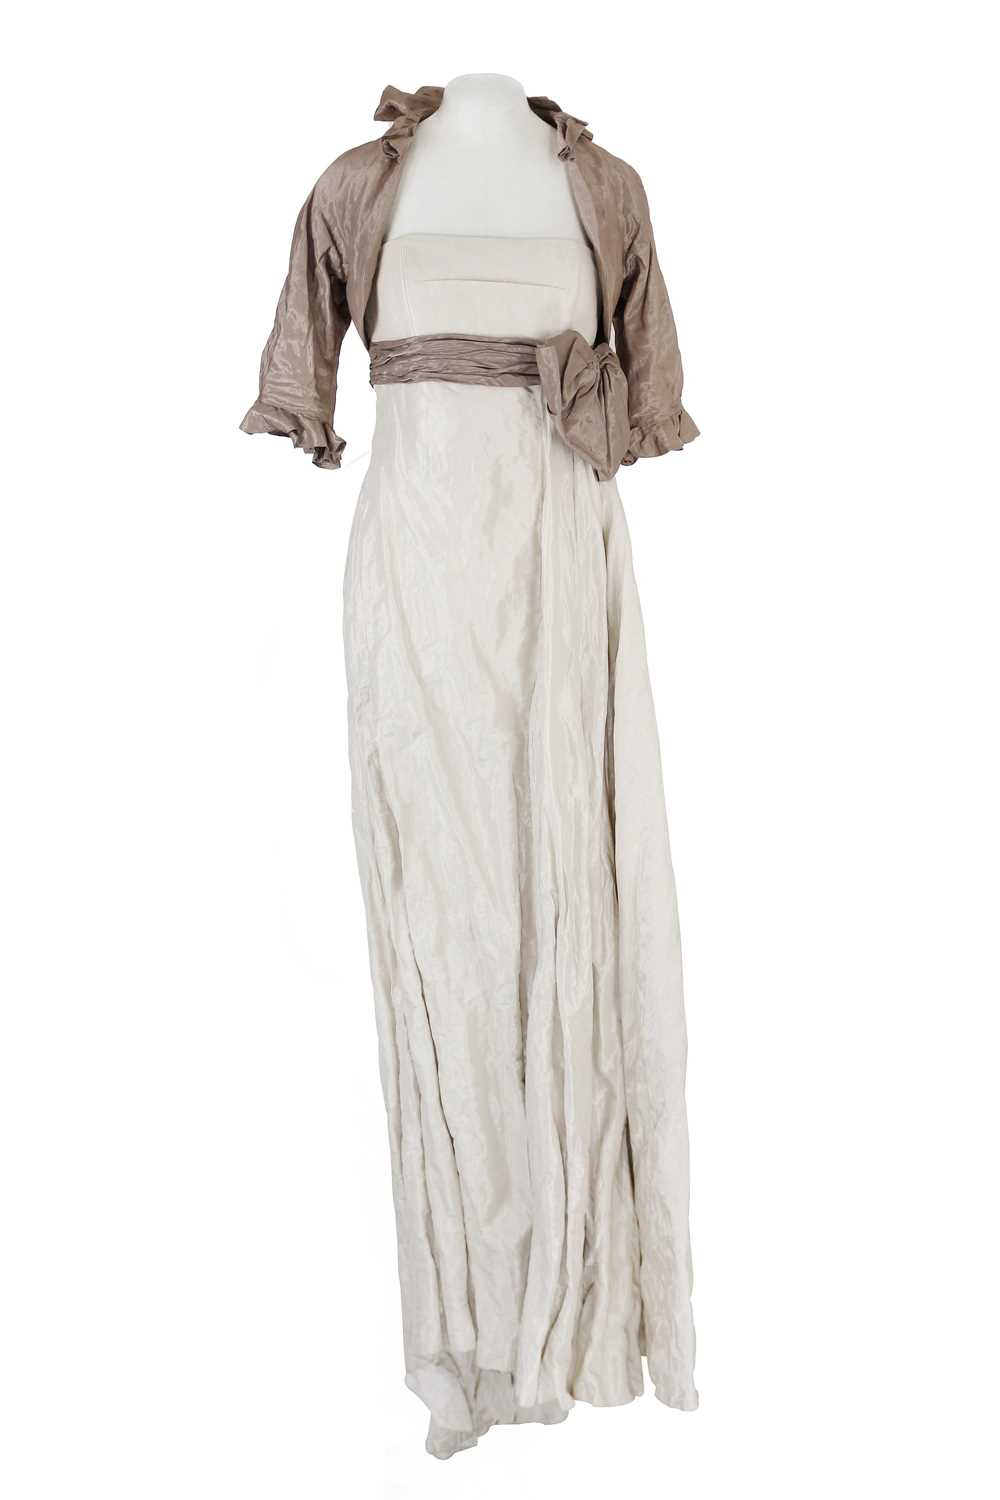 Jacques Azagury - A silk evening dress worn by Helen Mirren.